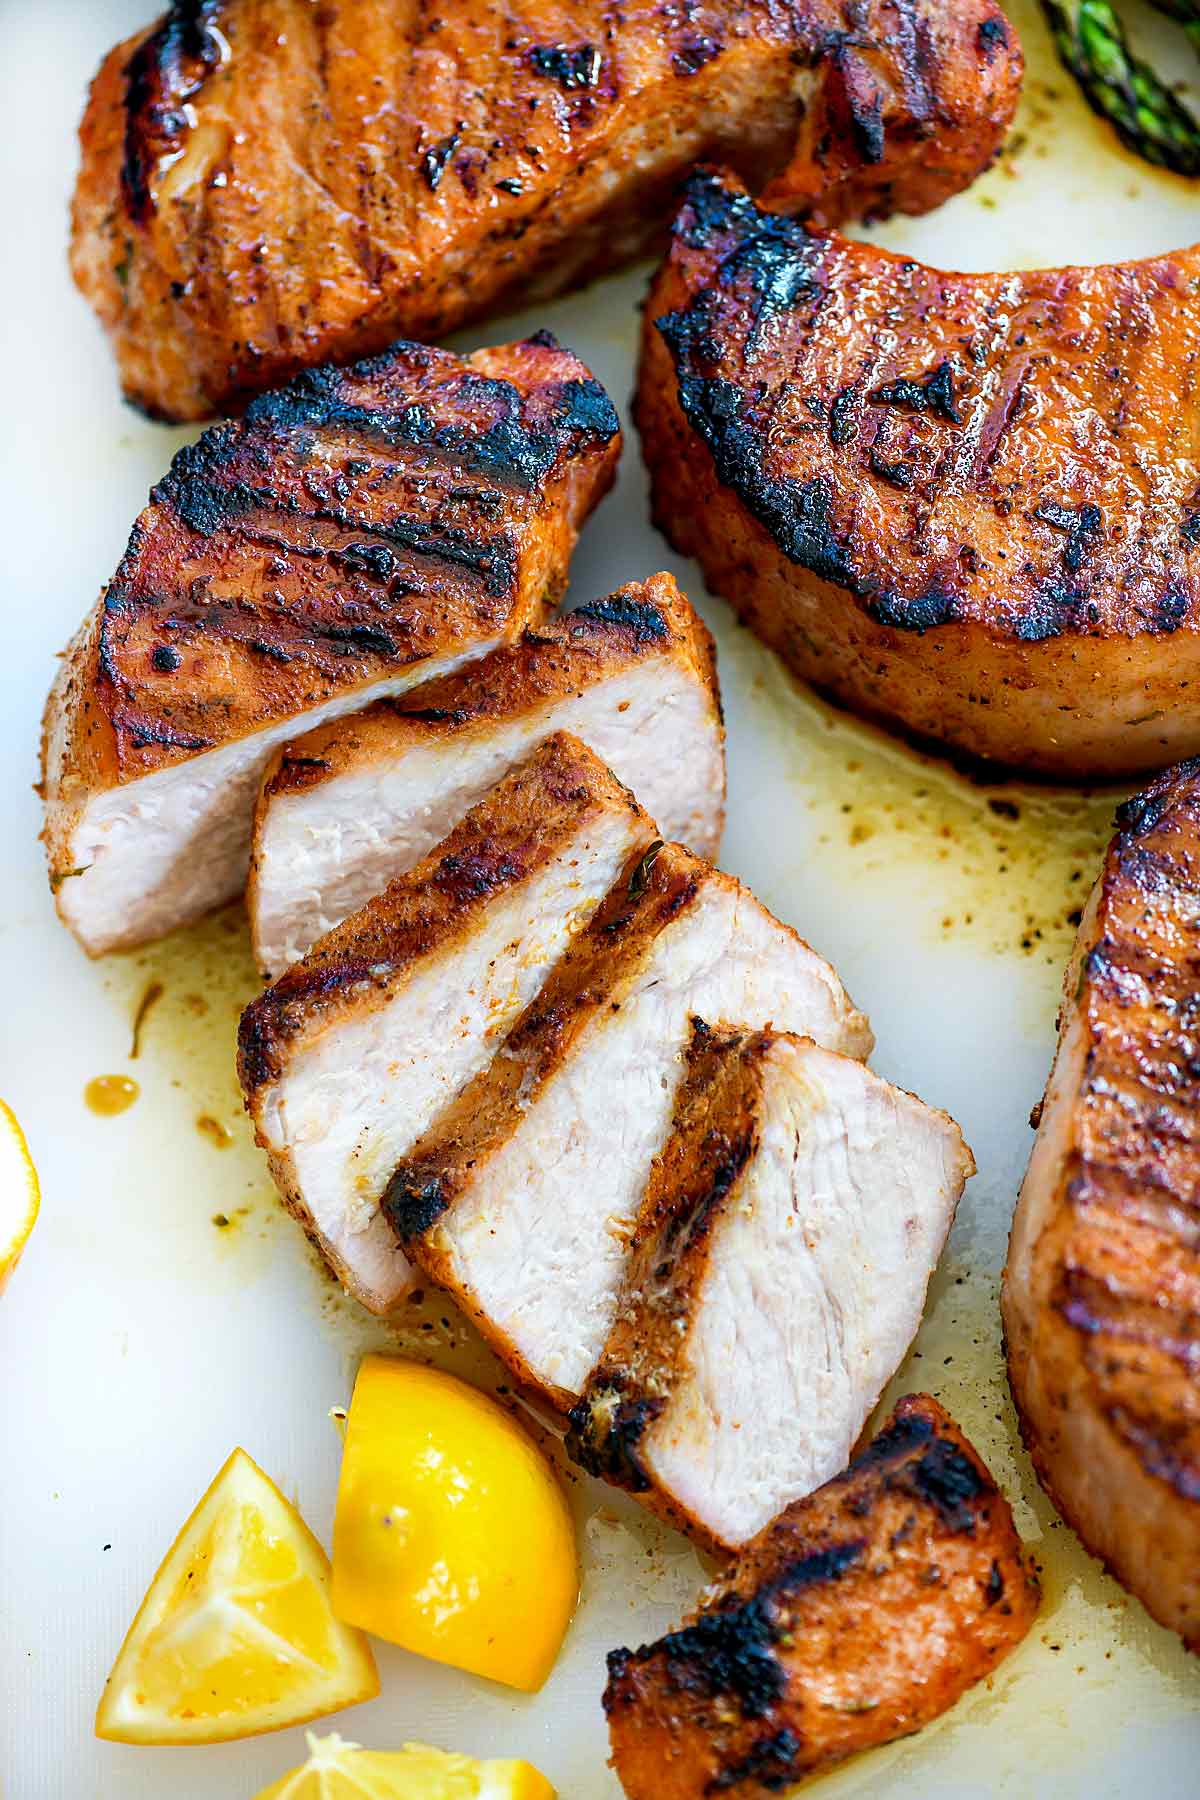 Comment préparer des côtelettes de porc grillées | foodiecrush.com #côte de porc #recettes #grillades